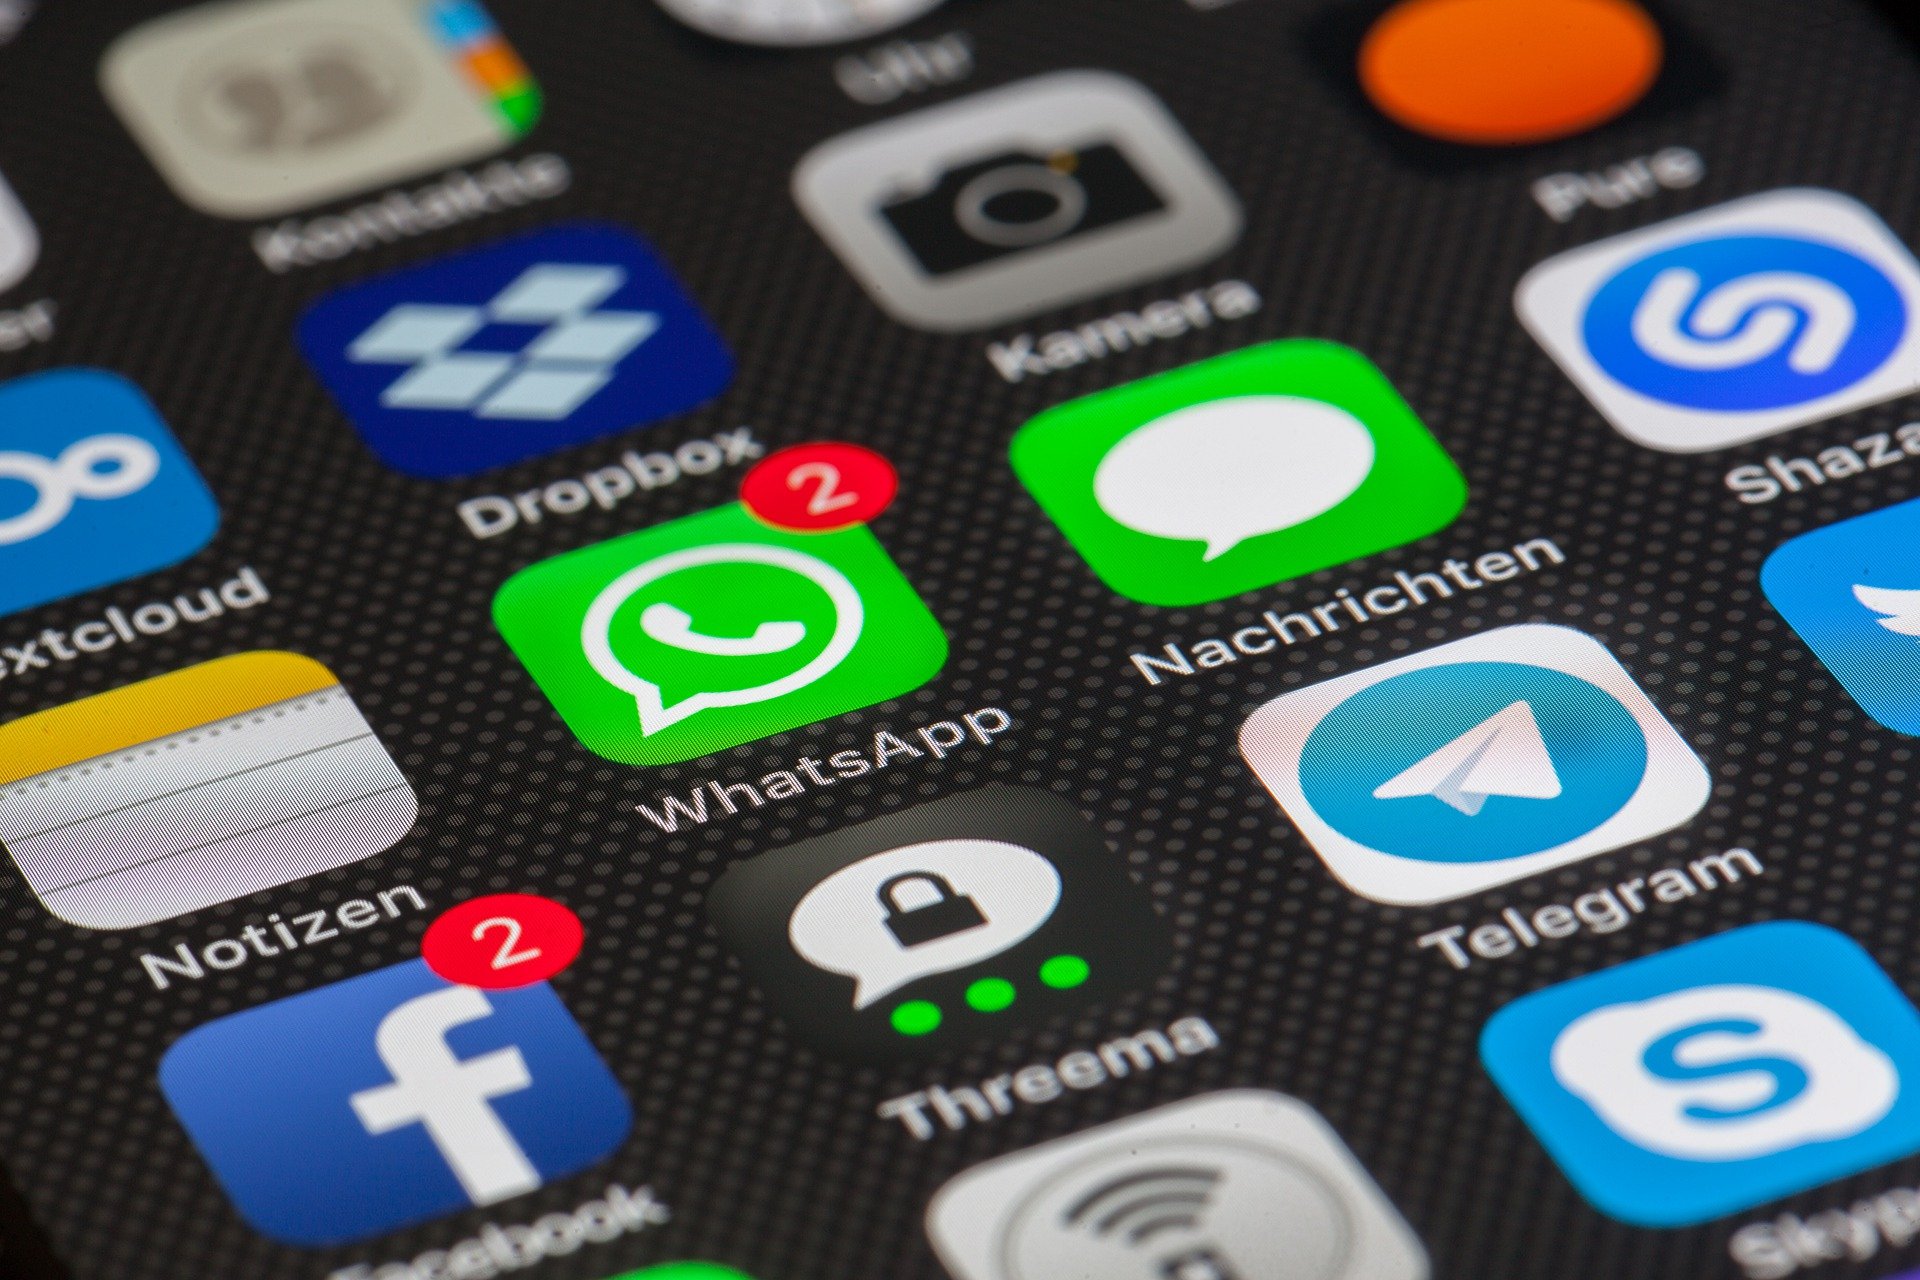 O sistema de transferência via WhatsApp começou a funcionar em maio